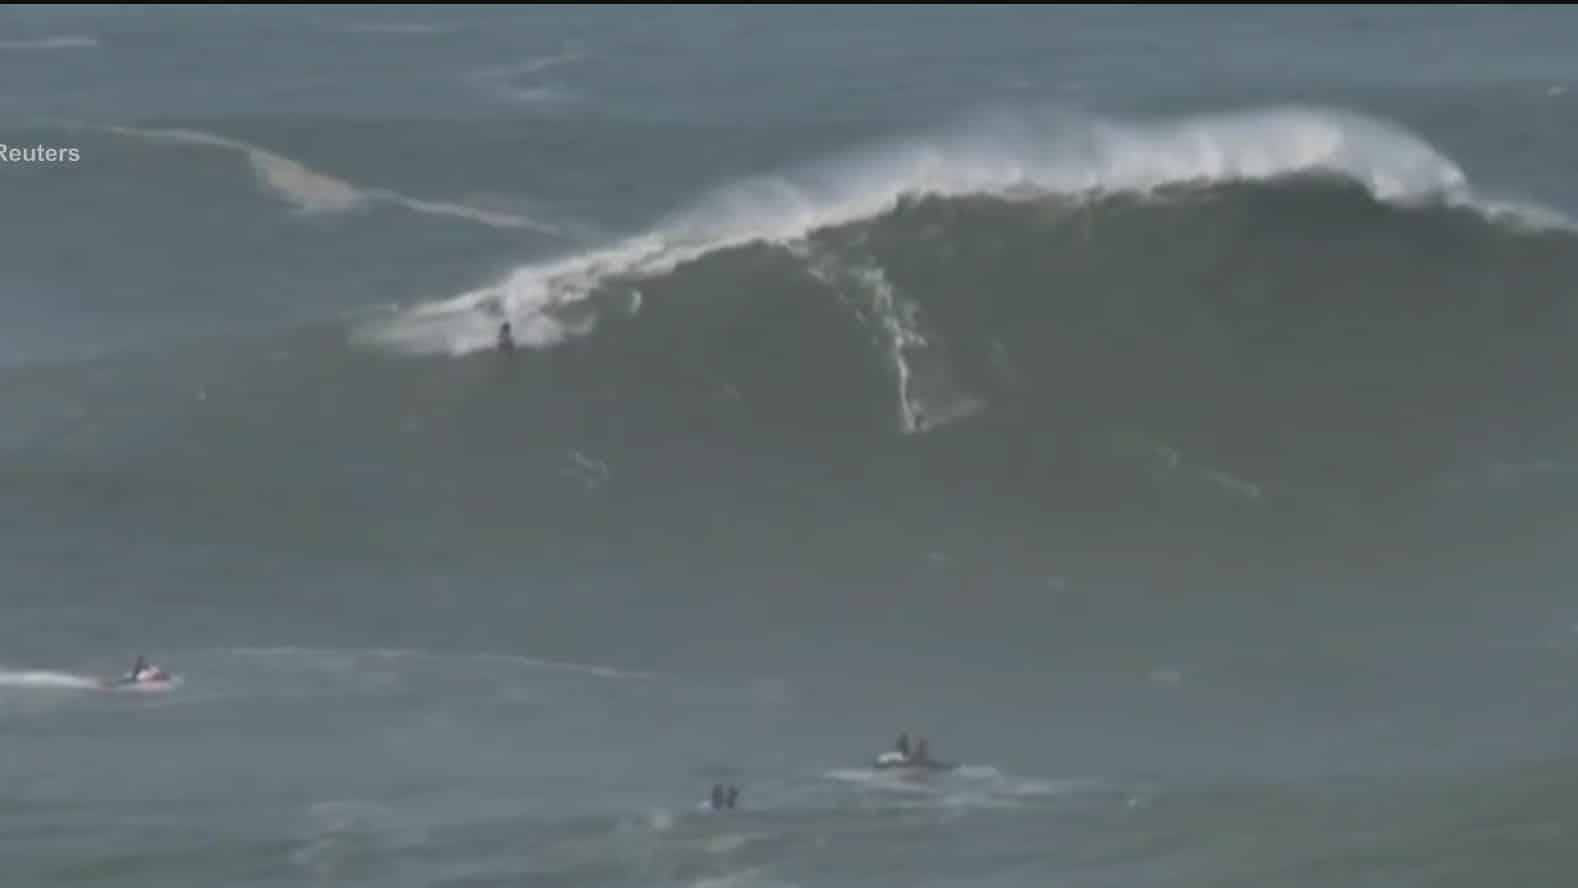 captan a surfistas en enormes olas en portugal